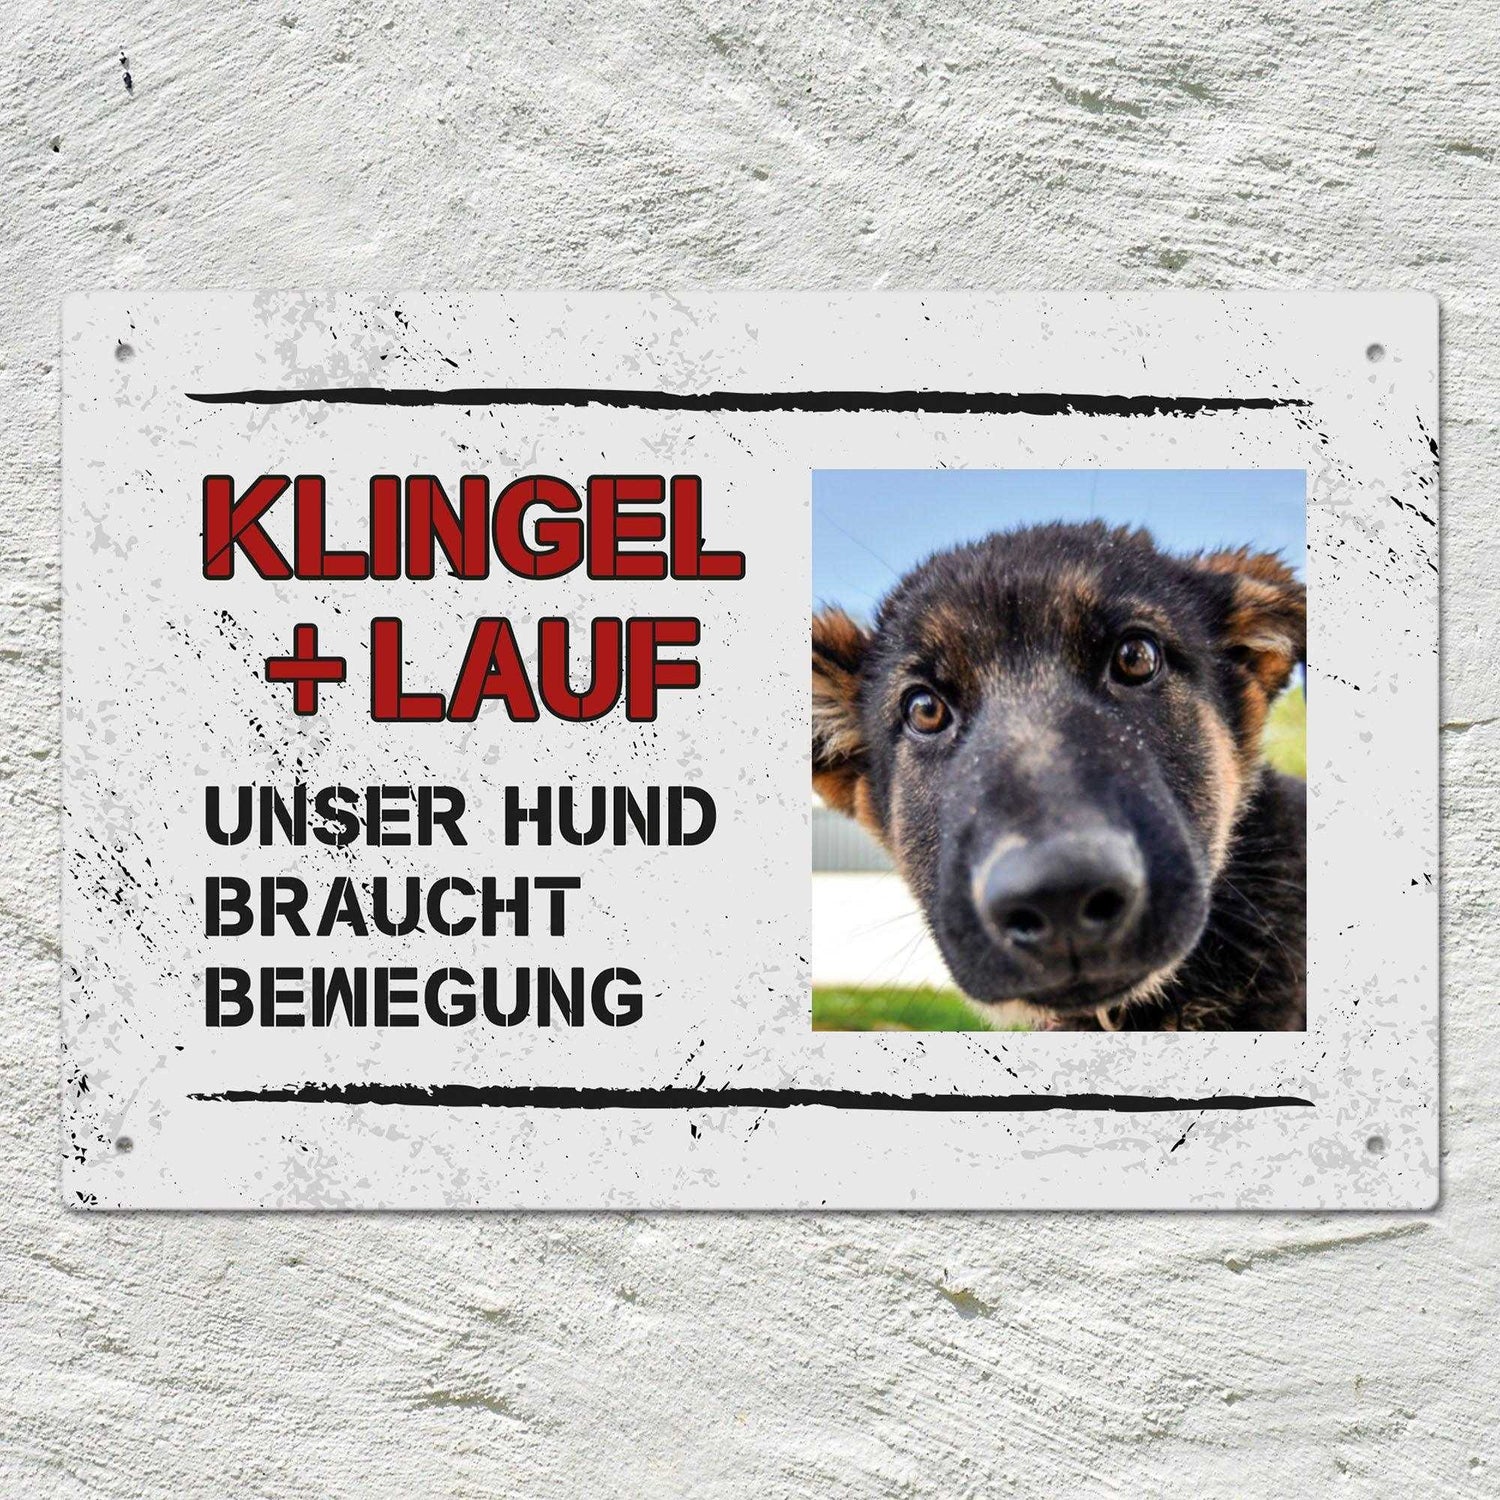 Personalisierbares -Foto- Schild "KLINGEL+LAUF"